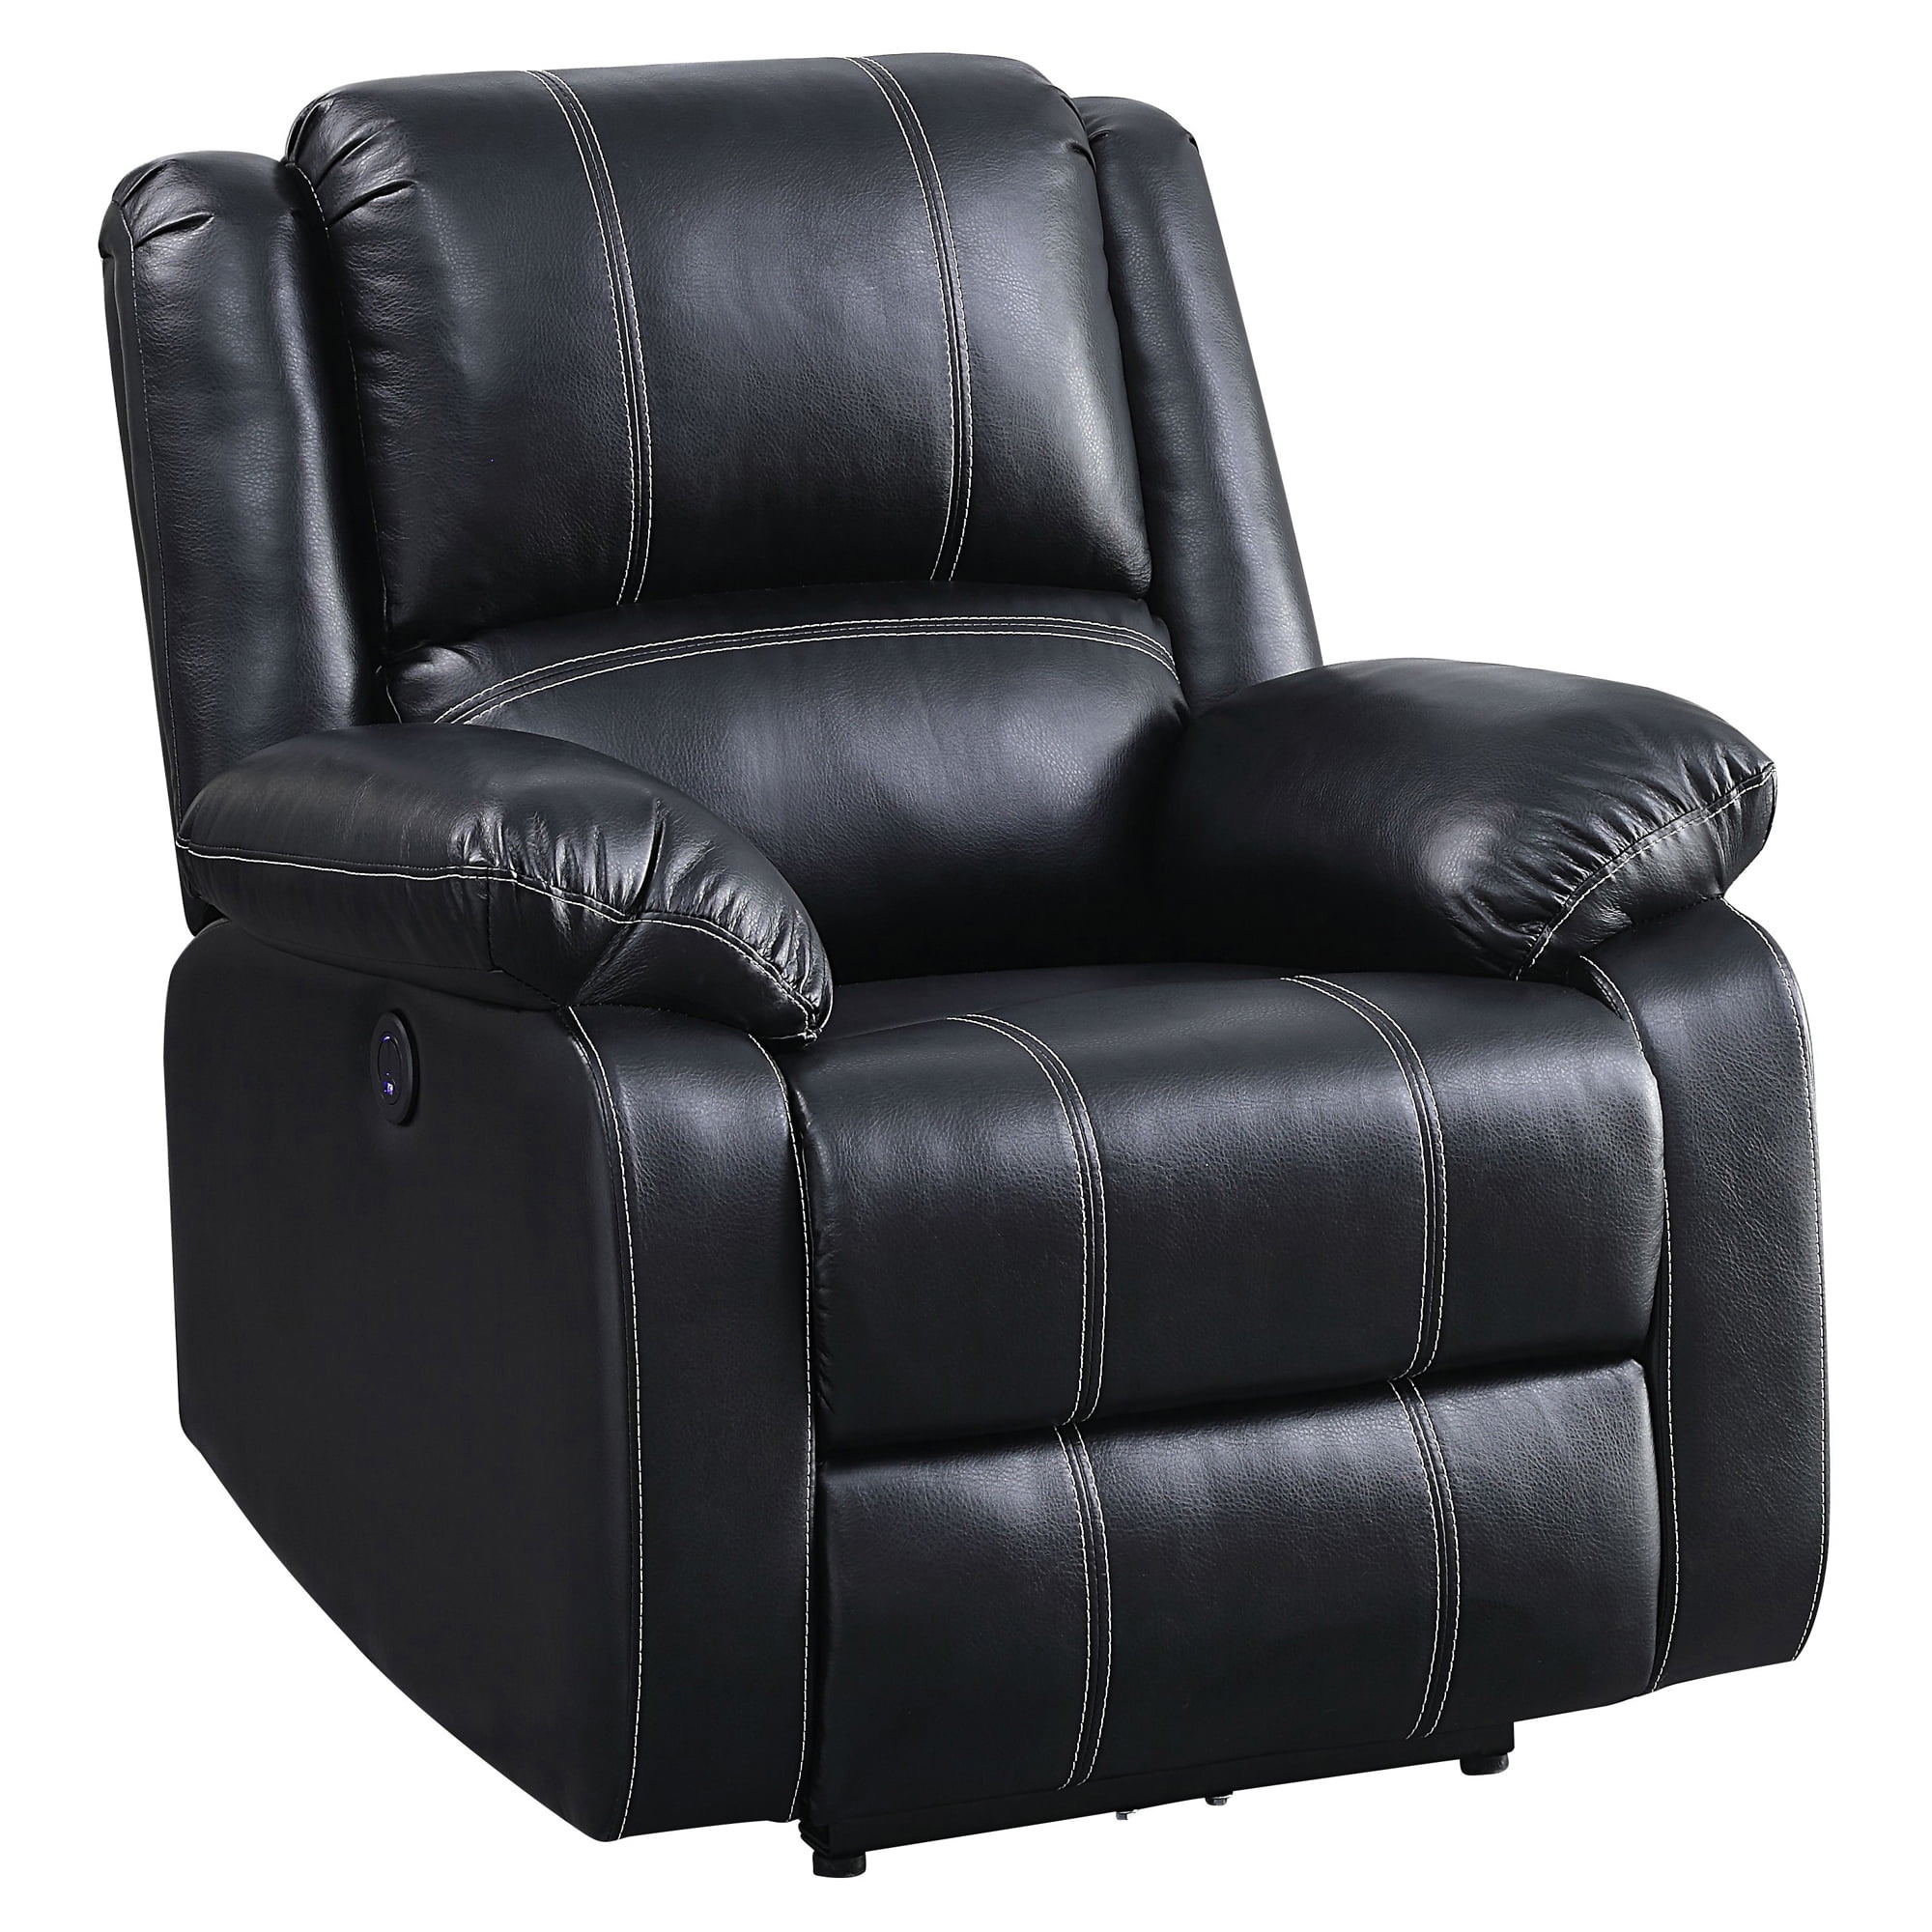 Picture of Acme Furniture 52288 37 x 37 x 40 in. Zuriel Power Recliner, Black PU